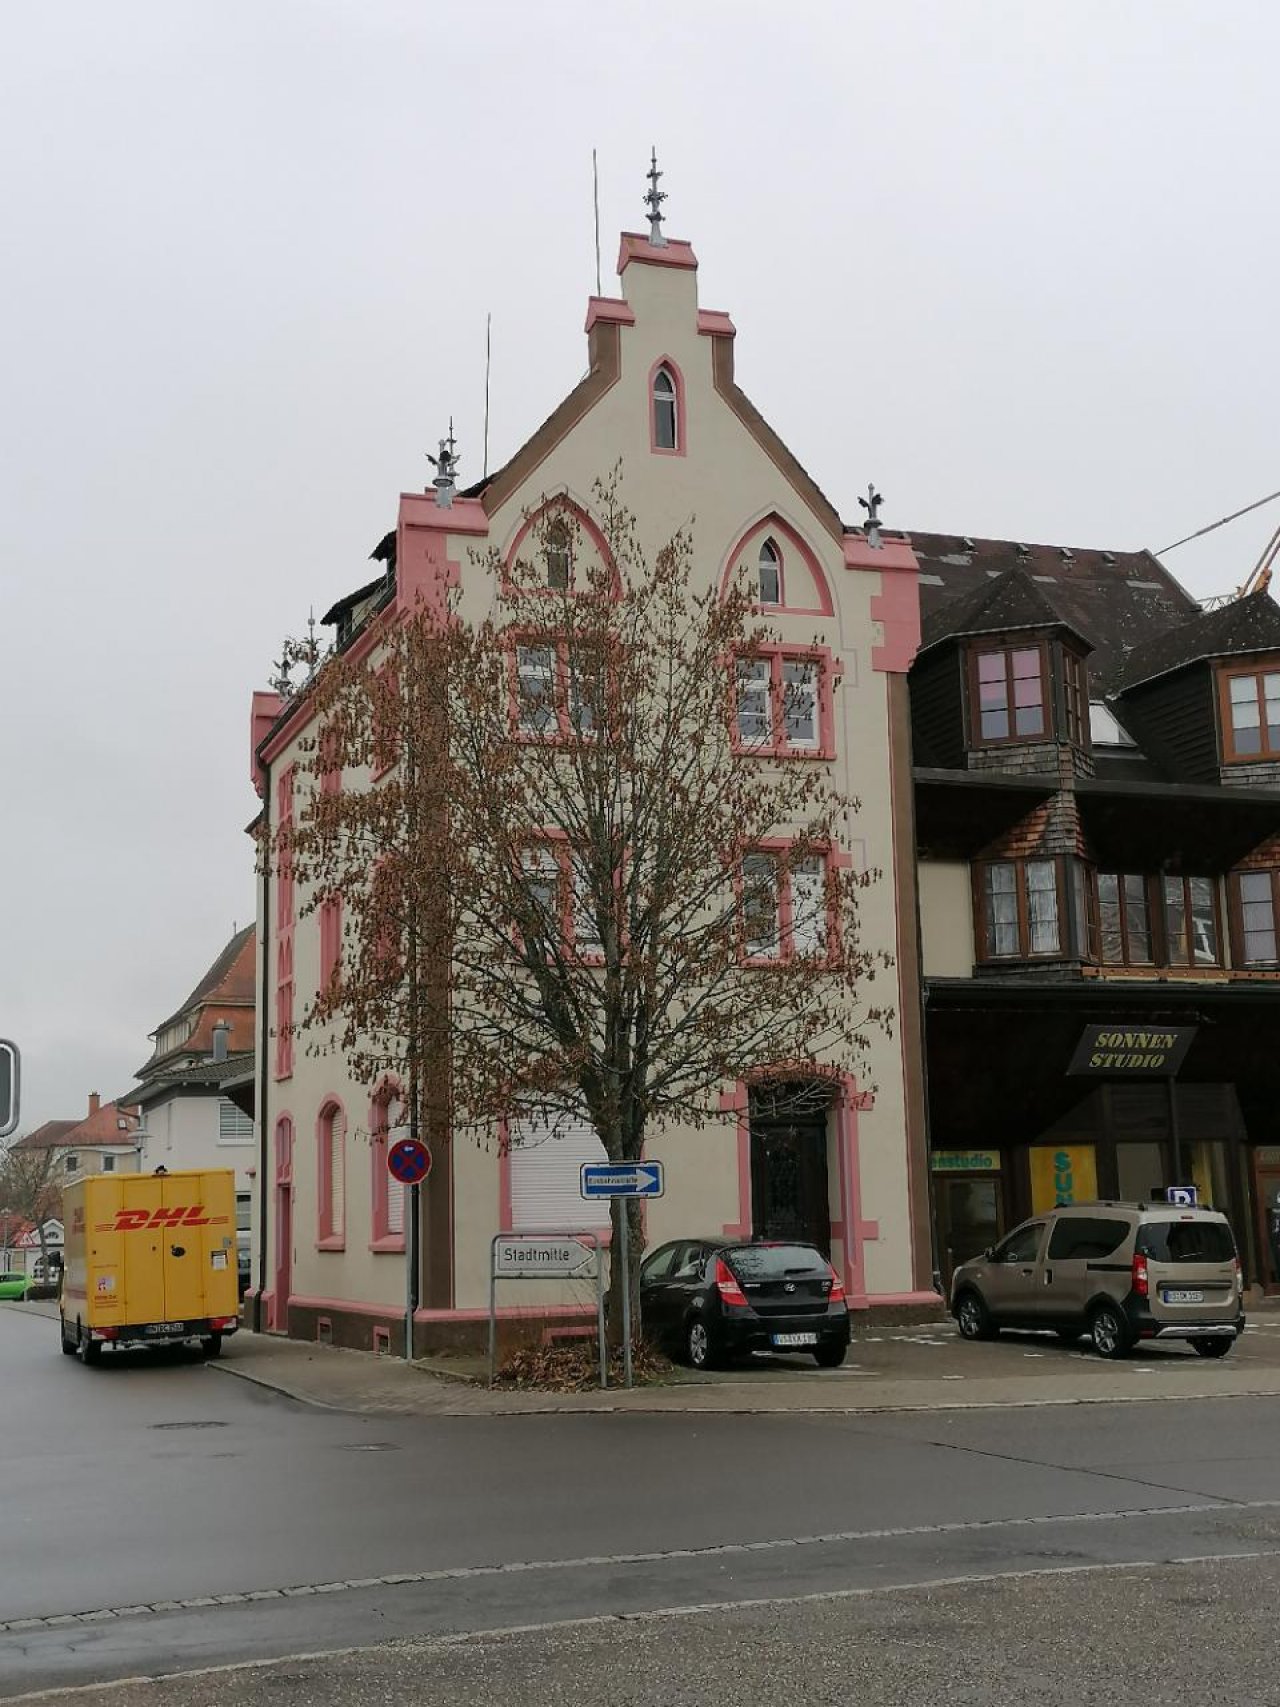 Wohnhaus in Landauf, LandApp BW App spotted by Harry Schneckenburger on 21.12.2020